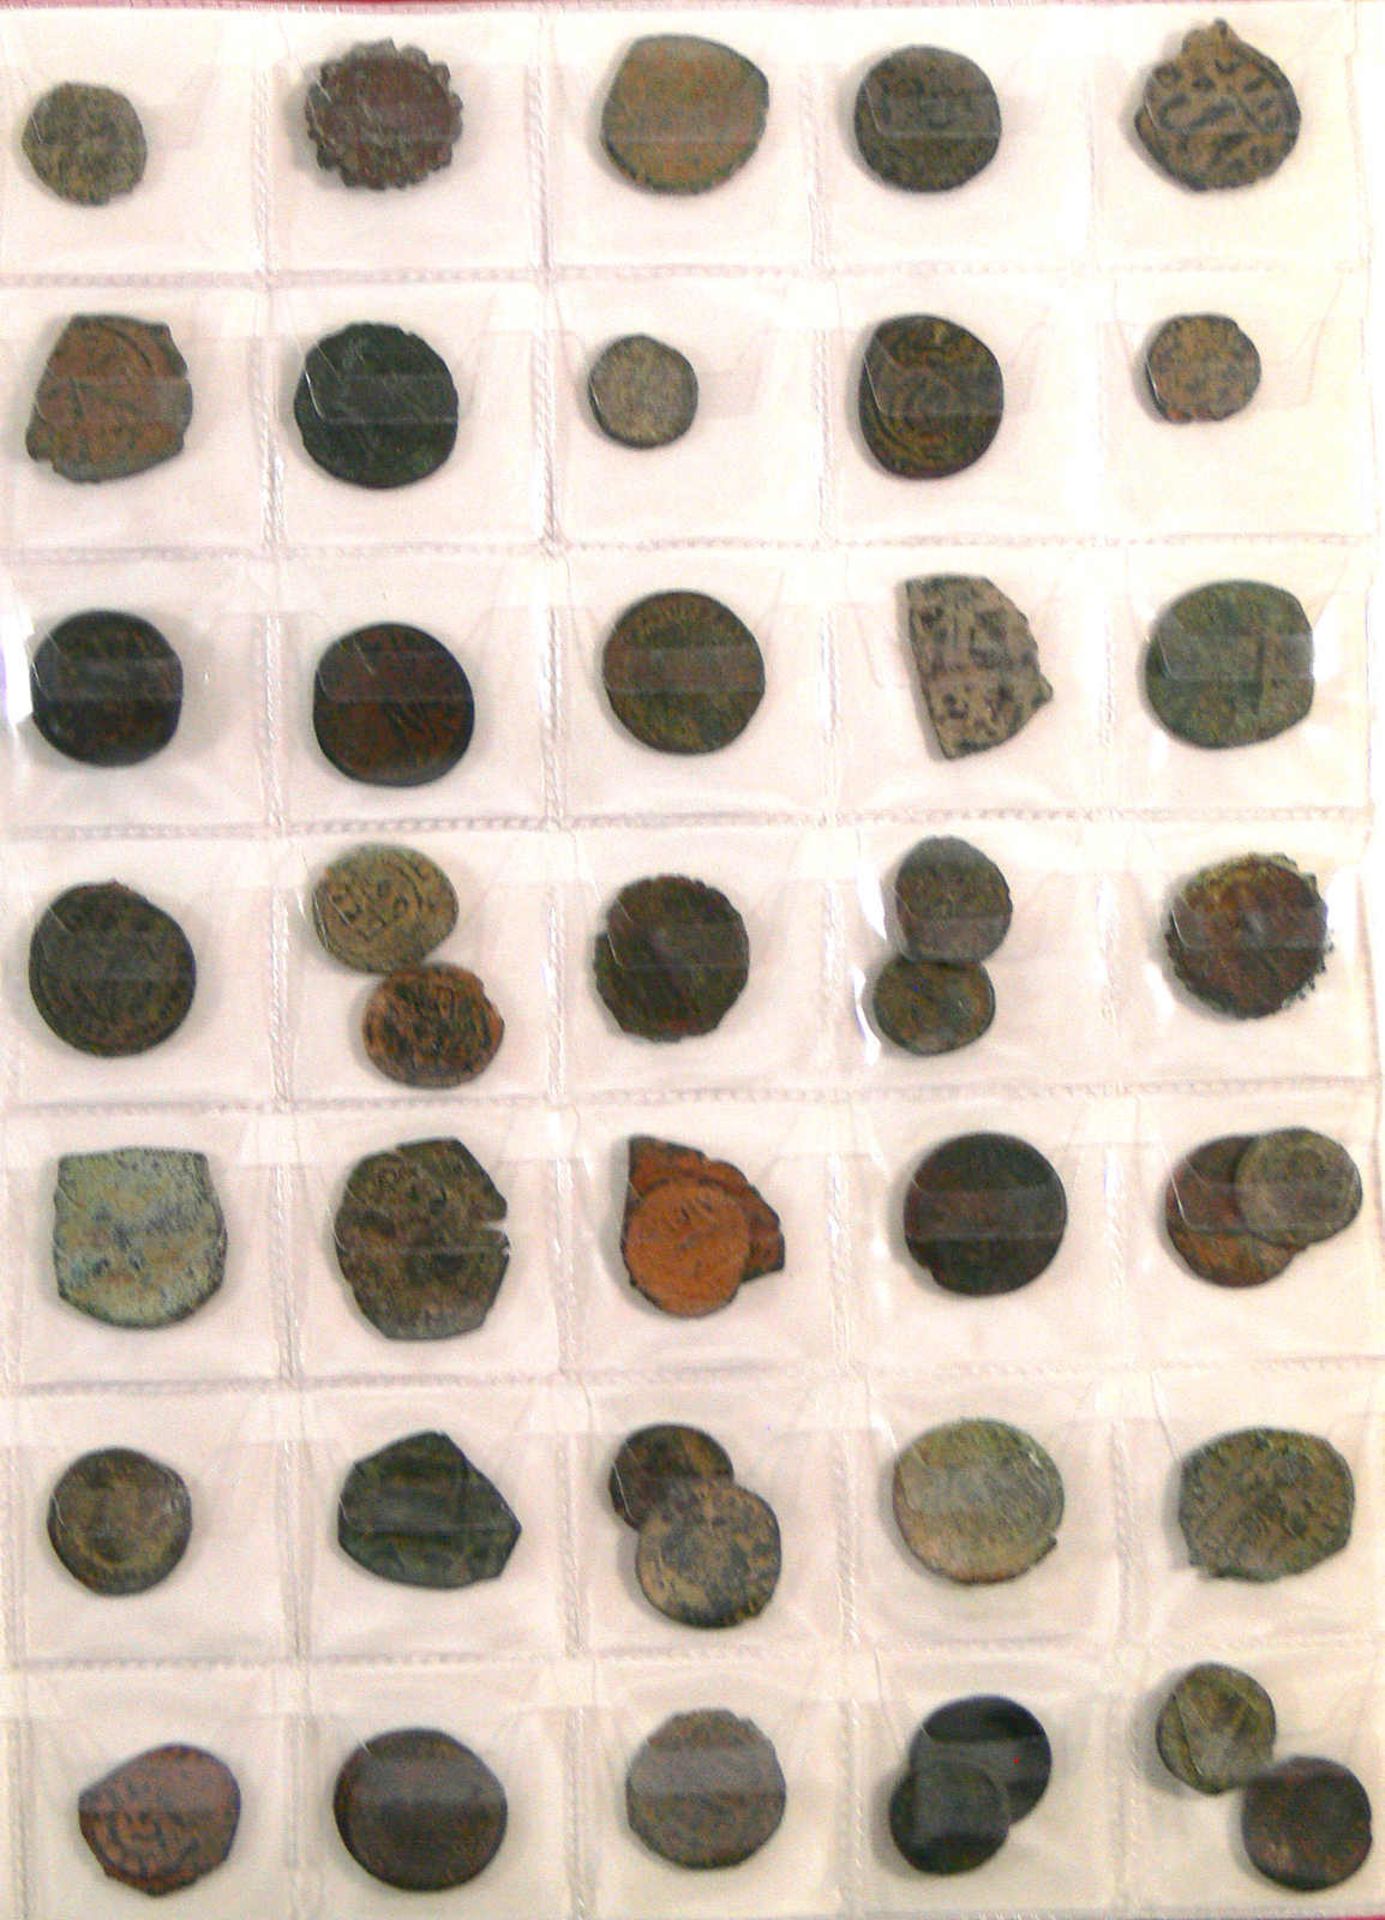 Schönes Lot alte Münzen, alle Byzanz.160 Stück, dabei auch seltenere und größere Münzen. Alles